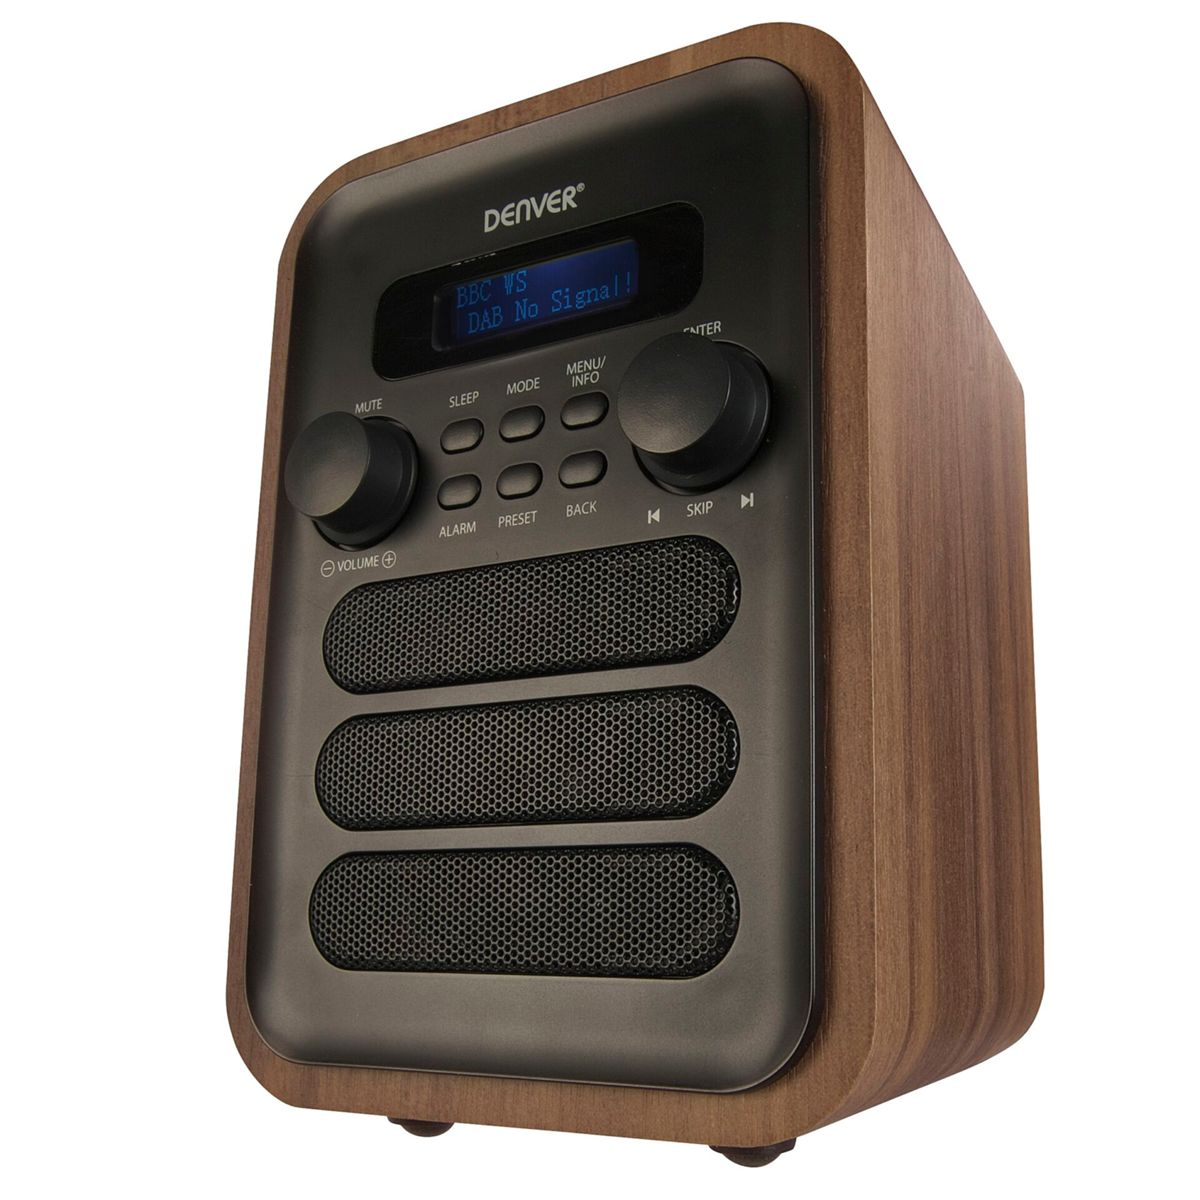 DENVER DAB-48 FM, DAB, Bluetooth, Digitalradio, grau, DAB+, braun